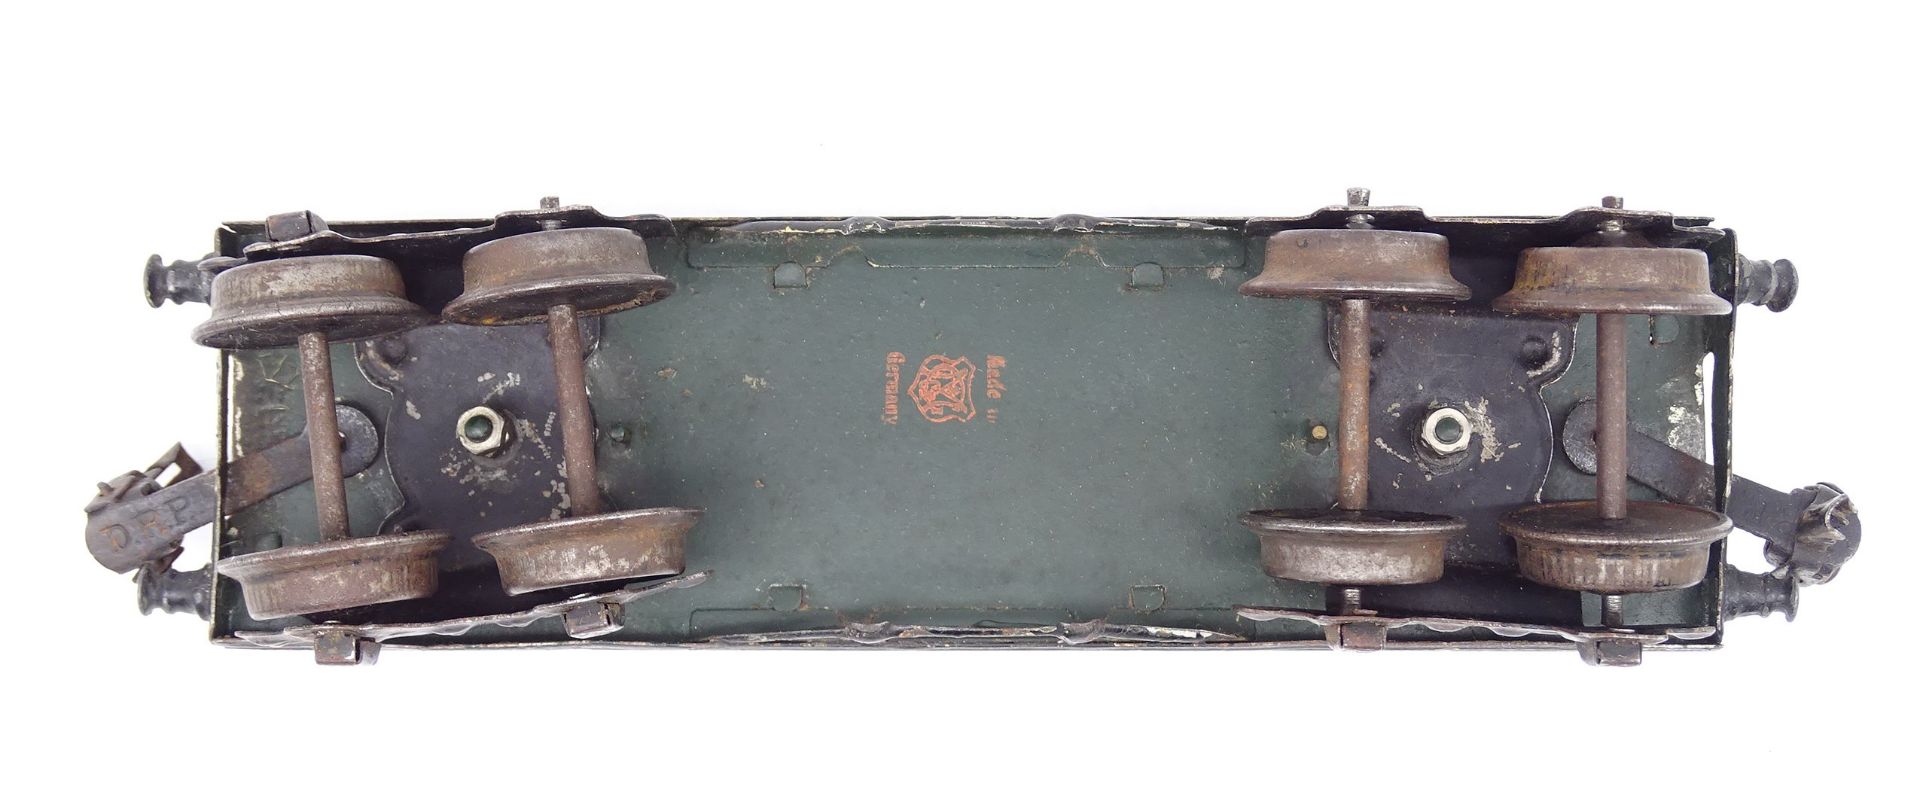 Niederbordwagen Spur 0, 4-achsig, Märklin, 20er-Jahre, 23 x 5,5 x 6 cm, mit Altersspuren - Bild 3 aus 6